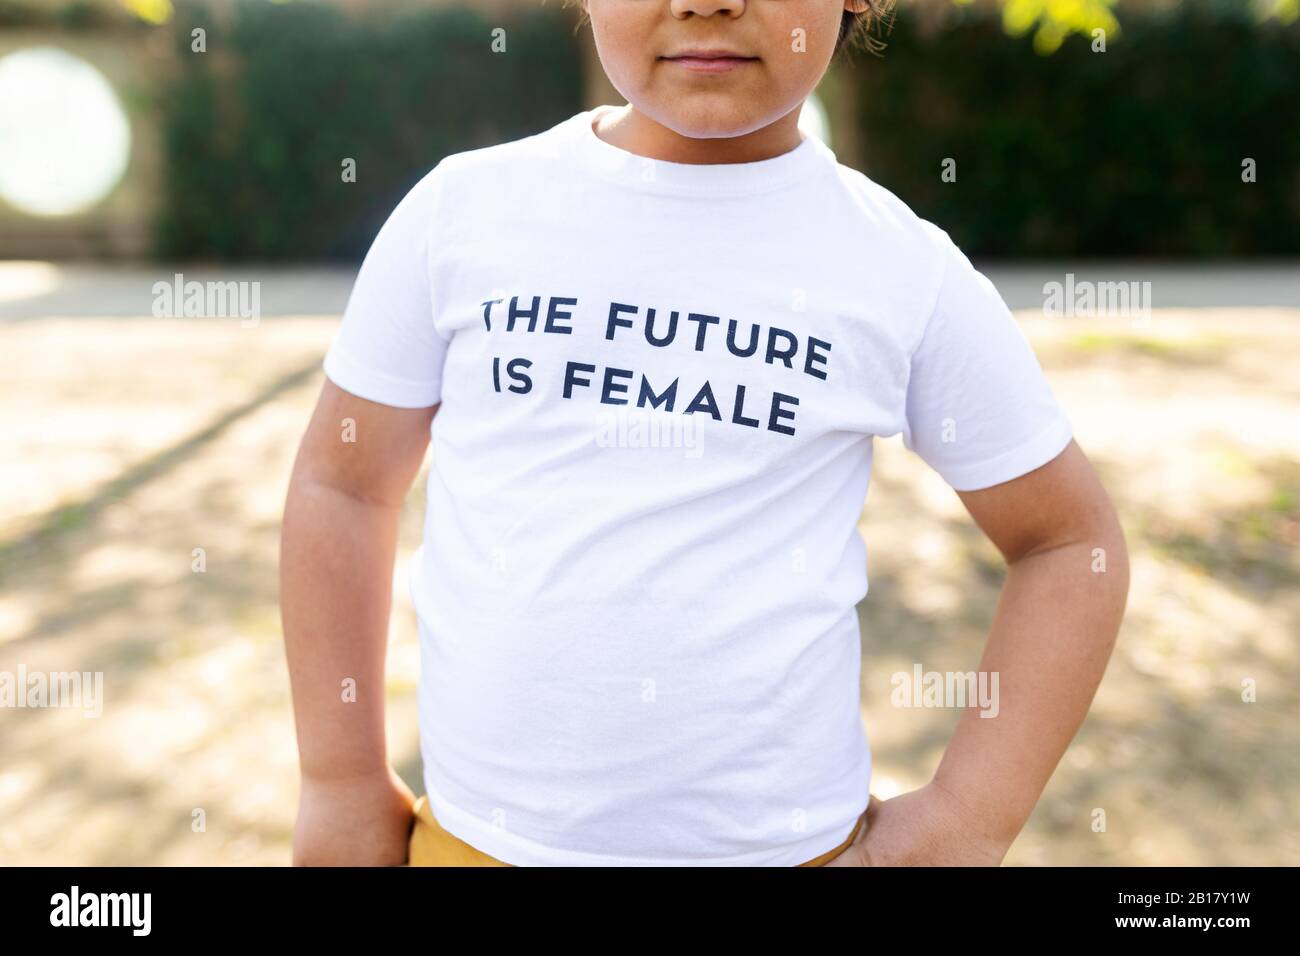 Stolzer kleiner Junge, der auf der Straße mit Aufdruck auf dem T-Shirt steht und sagt, die Zukunft sei weiblich Stockfoto